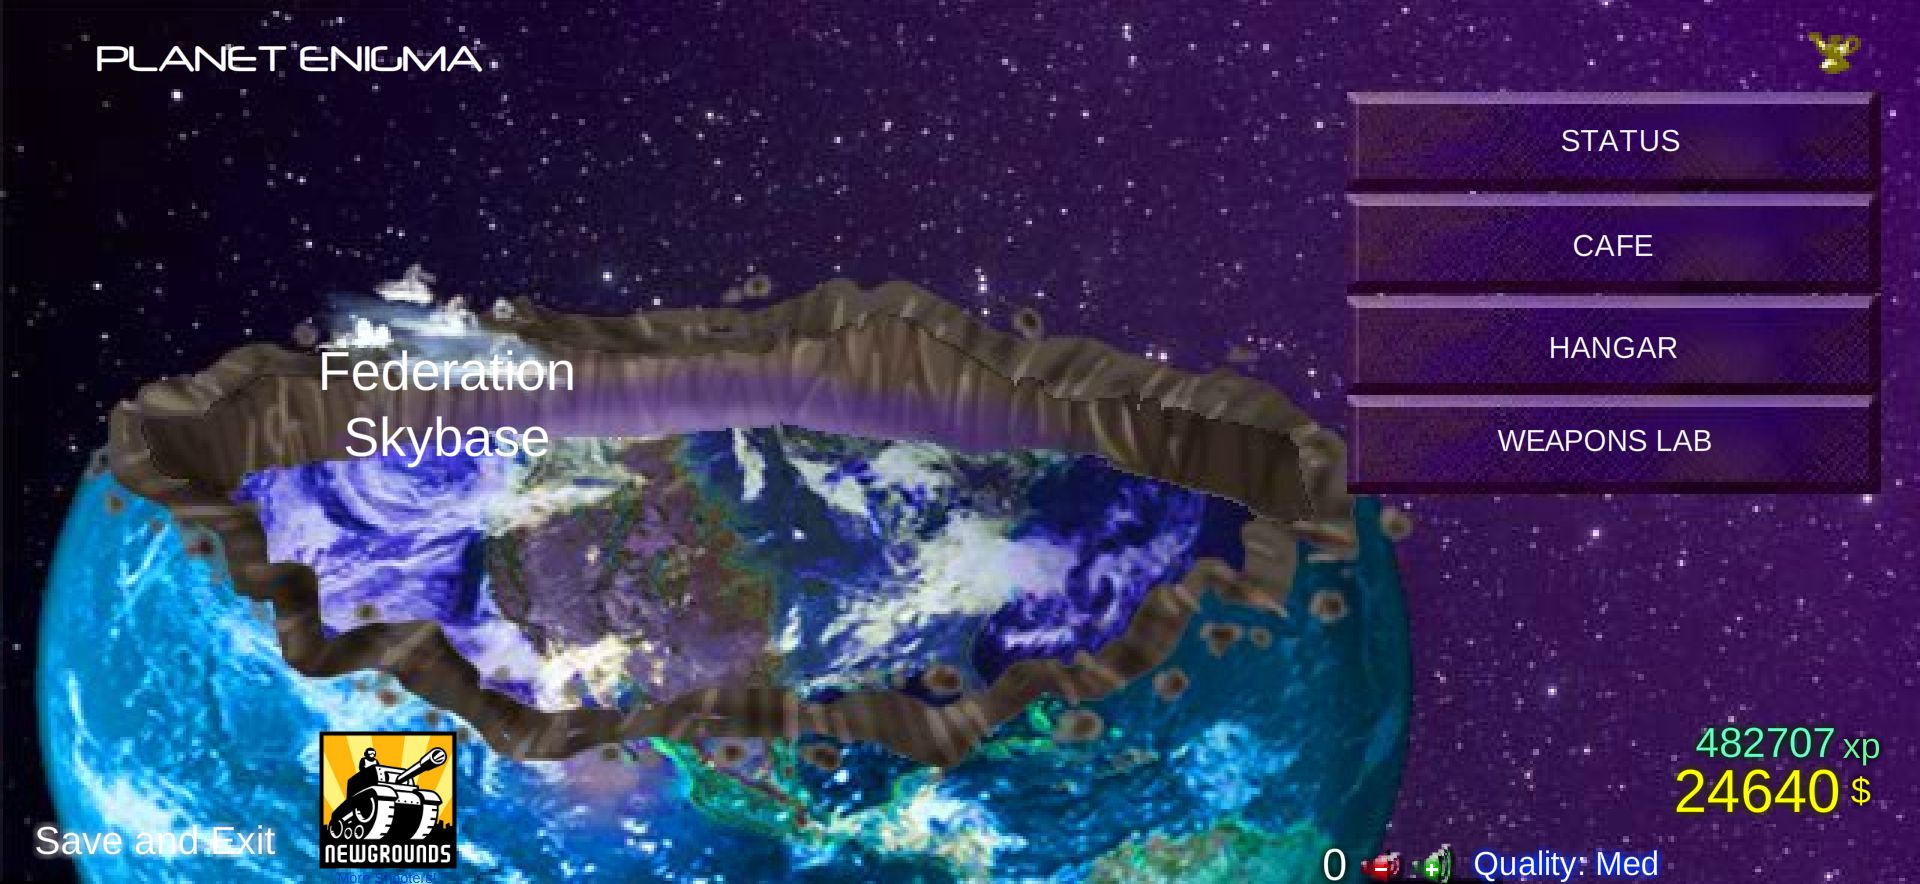 Planeta Enigma - kolejna duża lokacja z nowymi poziomami.